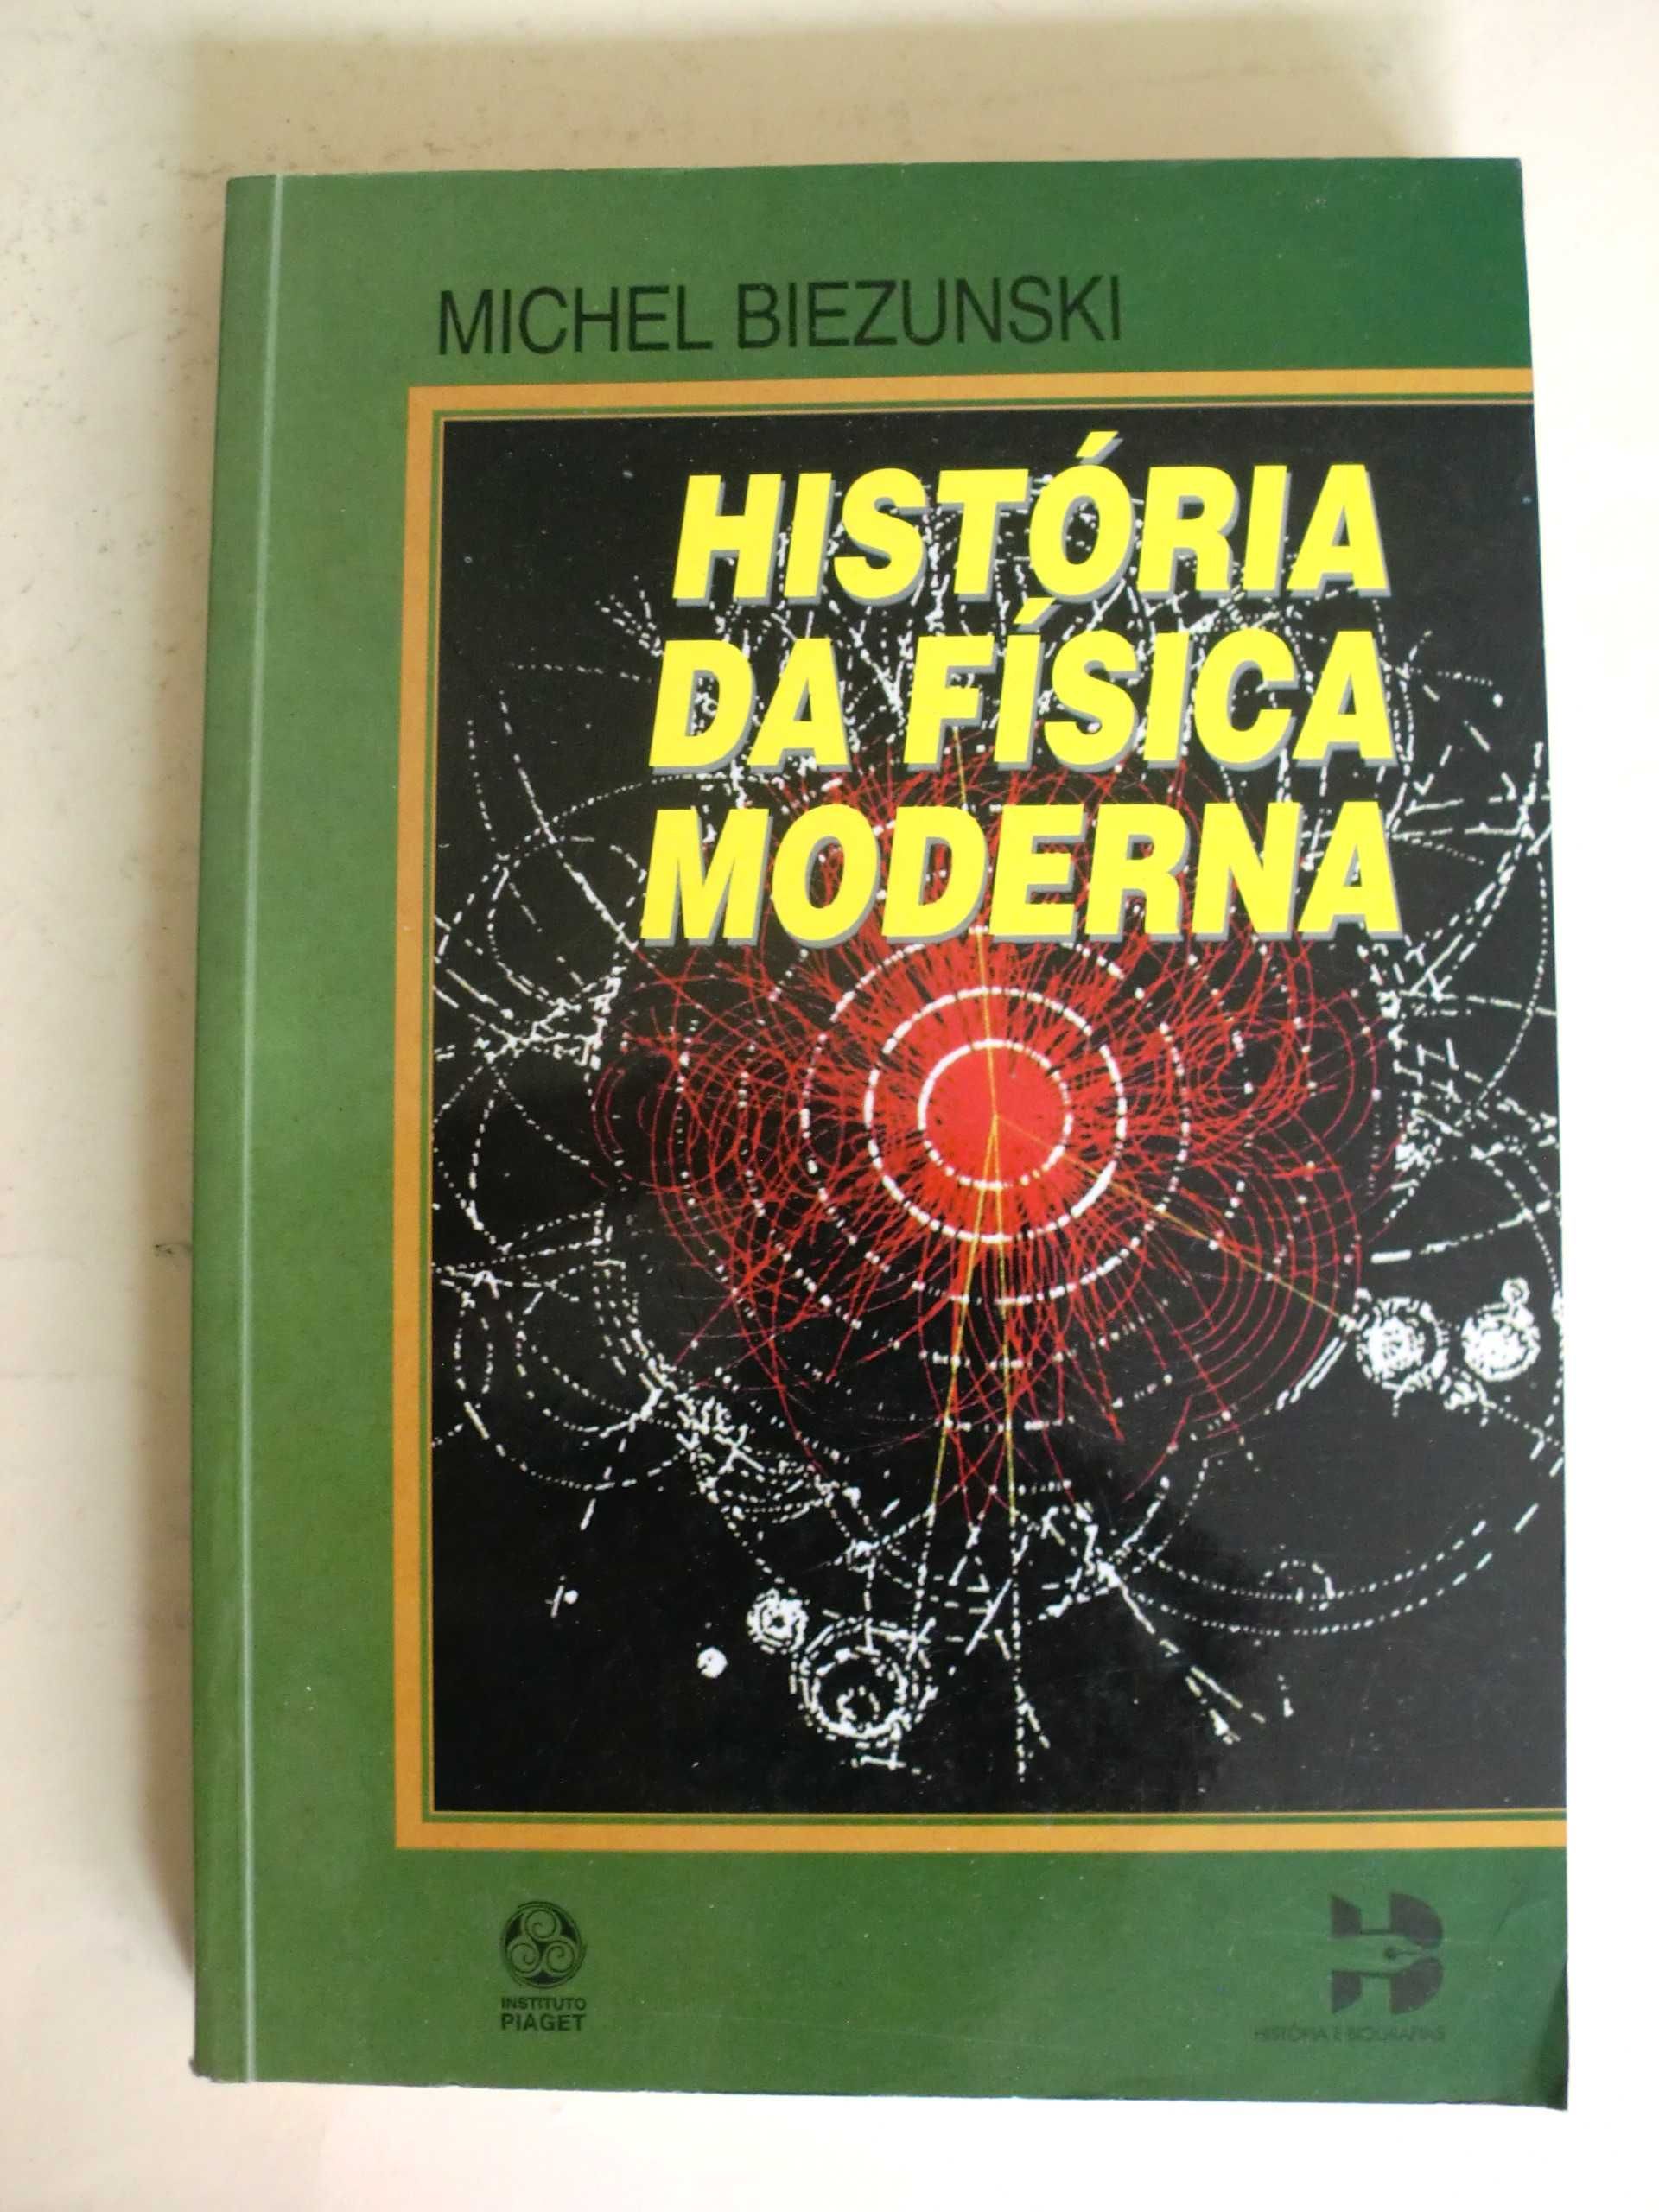 História da Física Moderna
de Michel Biezunski